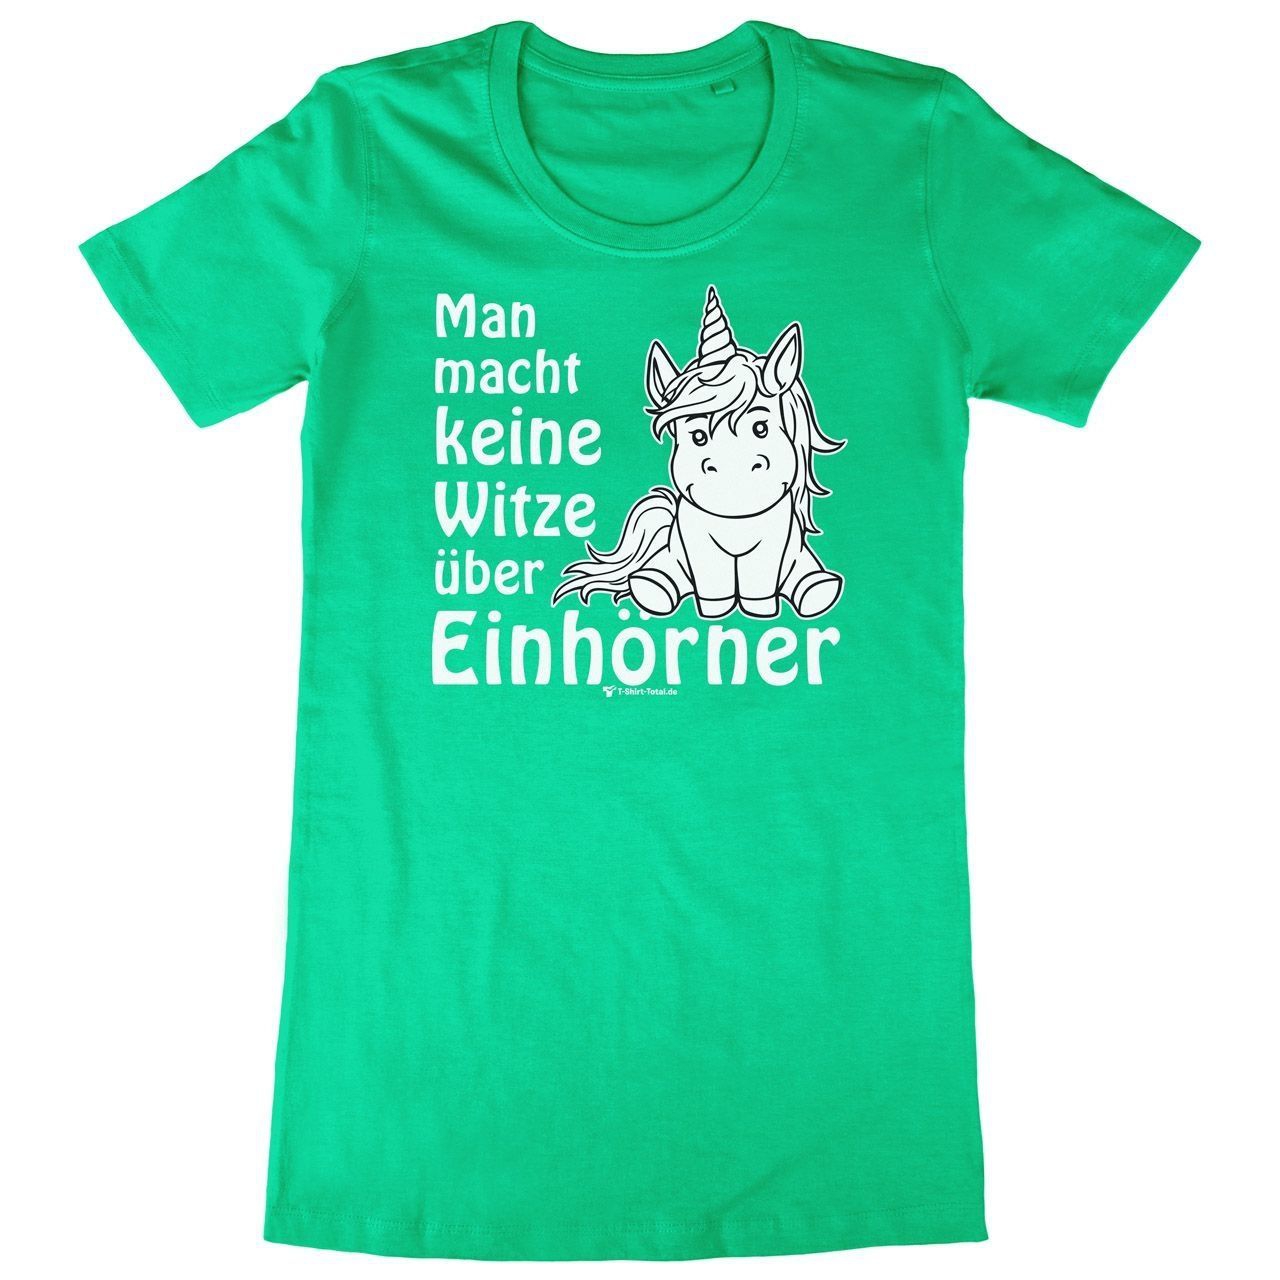 Einhorn Witze Woman Long Shirt grün Medium